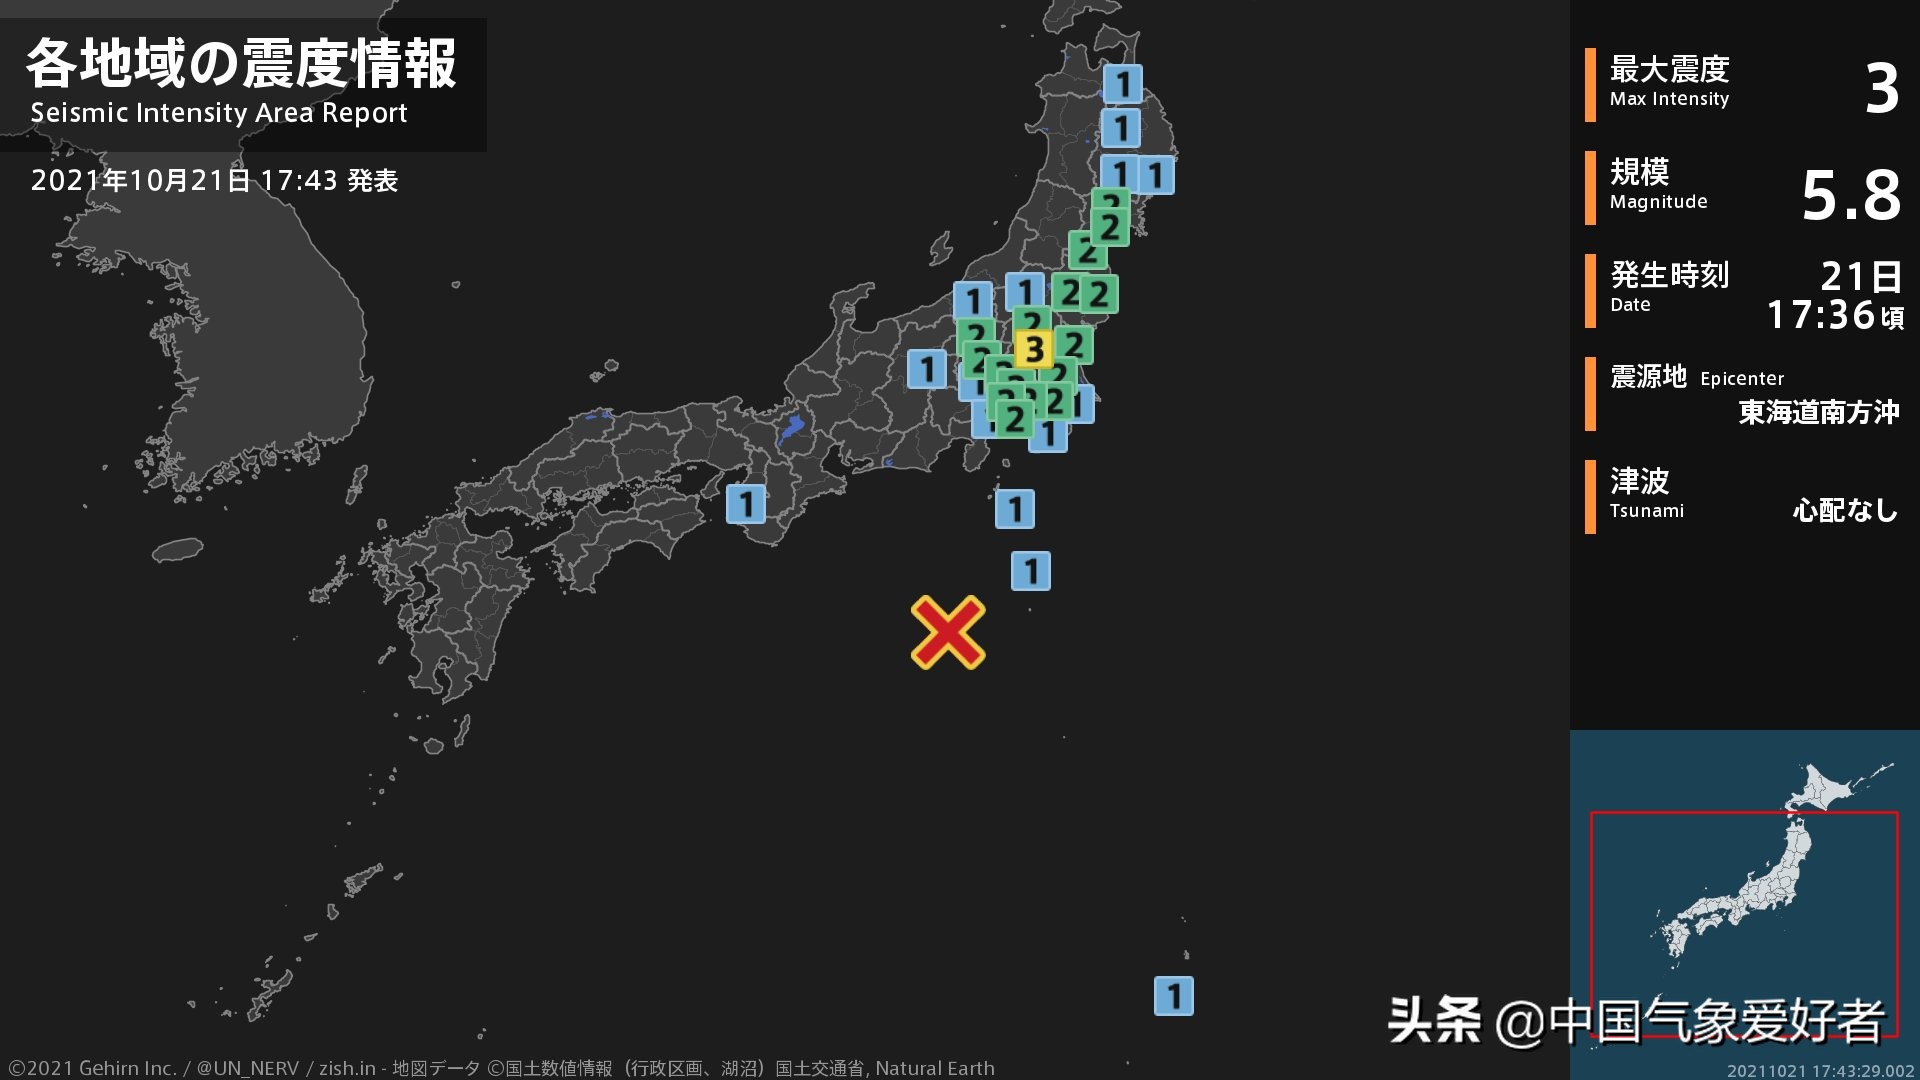 日本地震吧,日本地震吧 孤城傲雪